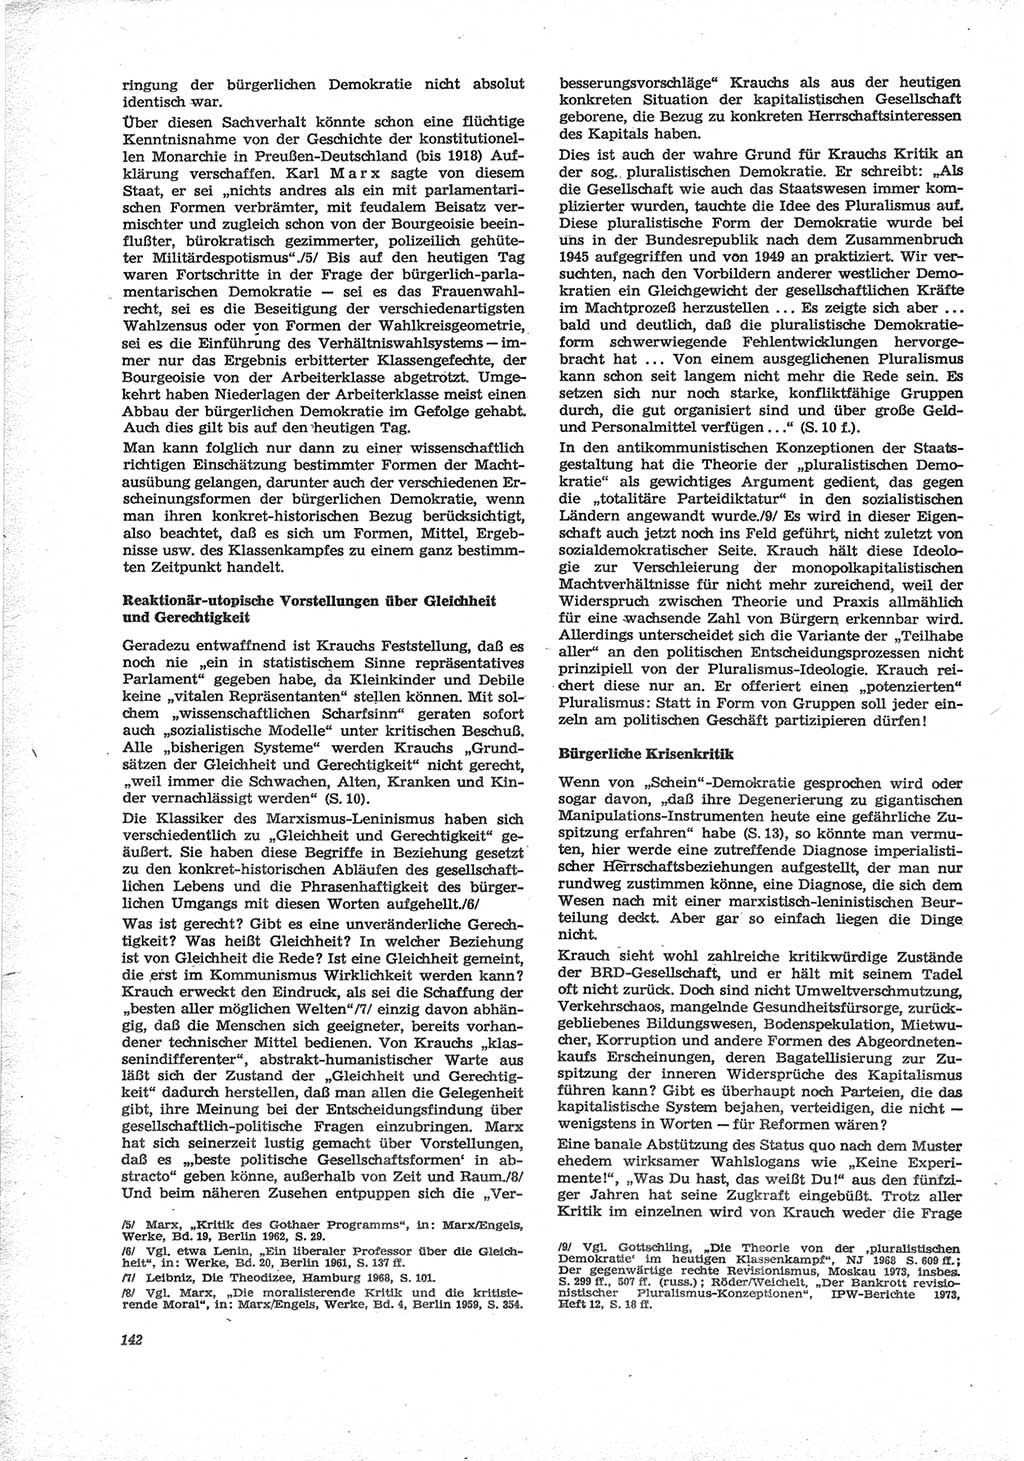 Neue Justiz (NJ), Zeitschrift für Recht und Rechtswissenschaft [Deutsche Demokratische Republik (DDR)], 28. Jahrgang 1974, Seite 142 (NJ DDR 1974, S. 142)